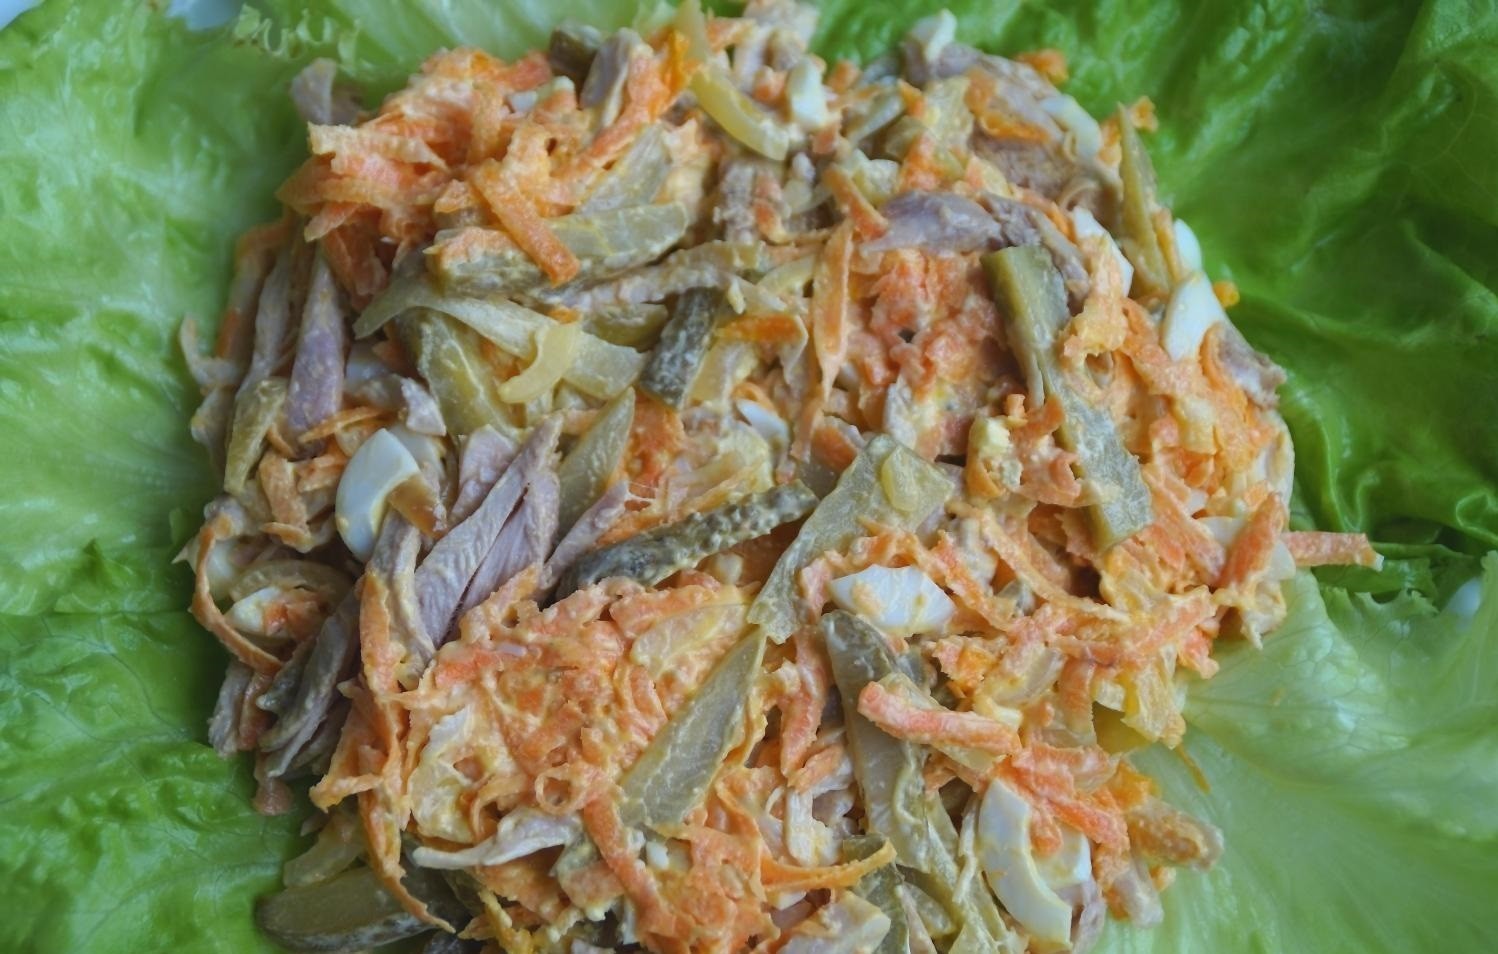 овощная зажарка, перемешанная с вареной курицей и солеными огурцами на листьях салата